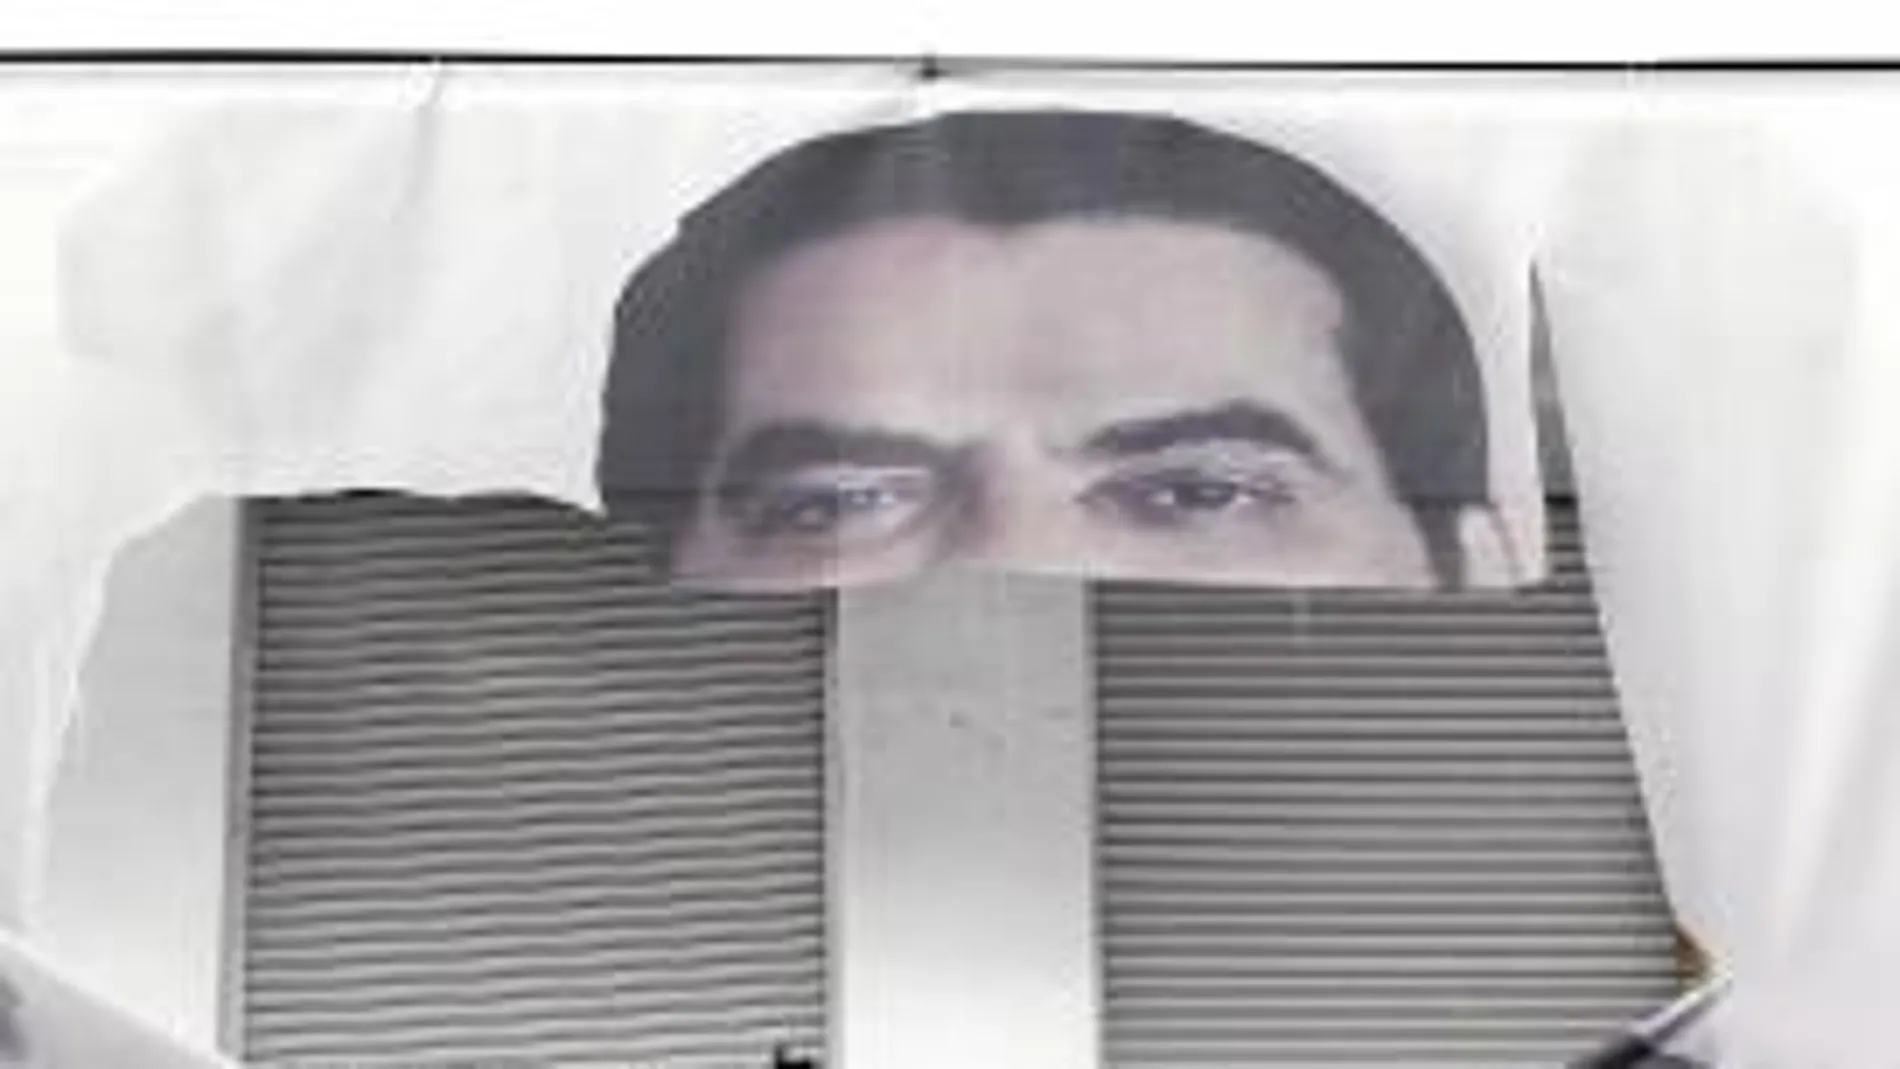 Un cartel del huido dictador Ben Ali aparece arrancado de la pared de un edificio del centro de la capital de Túnez